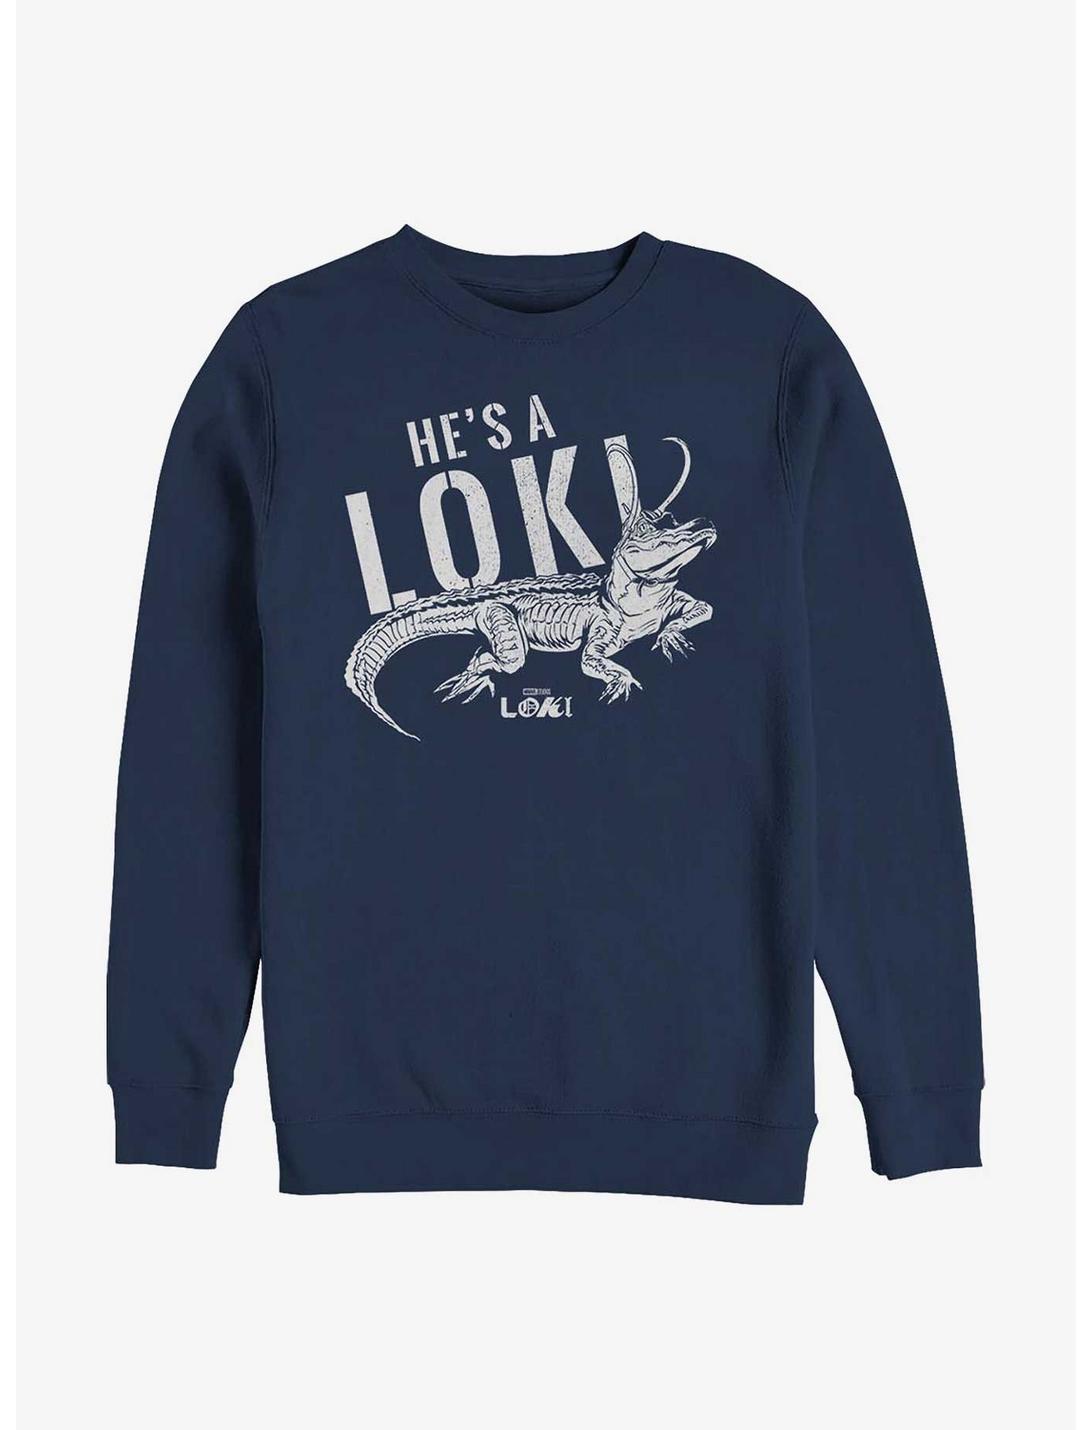 Marvel Loki Alligator Timeline Sweatshirt, NAVY, hi-res